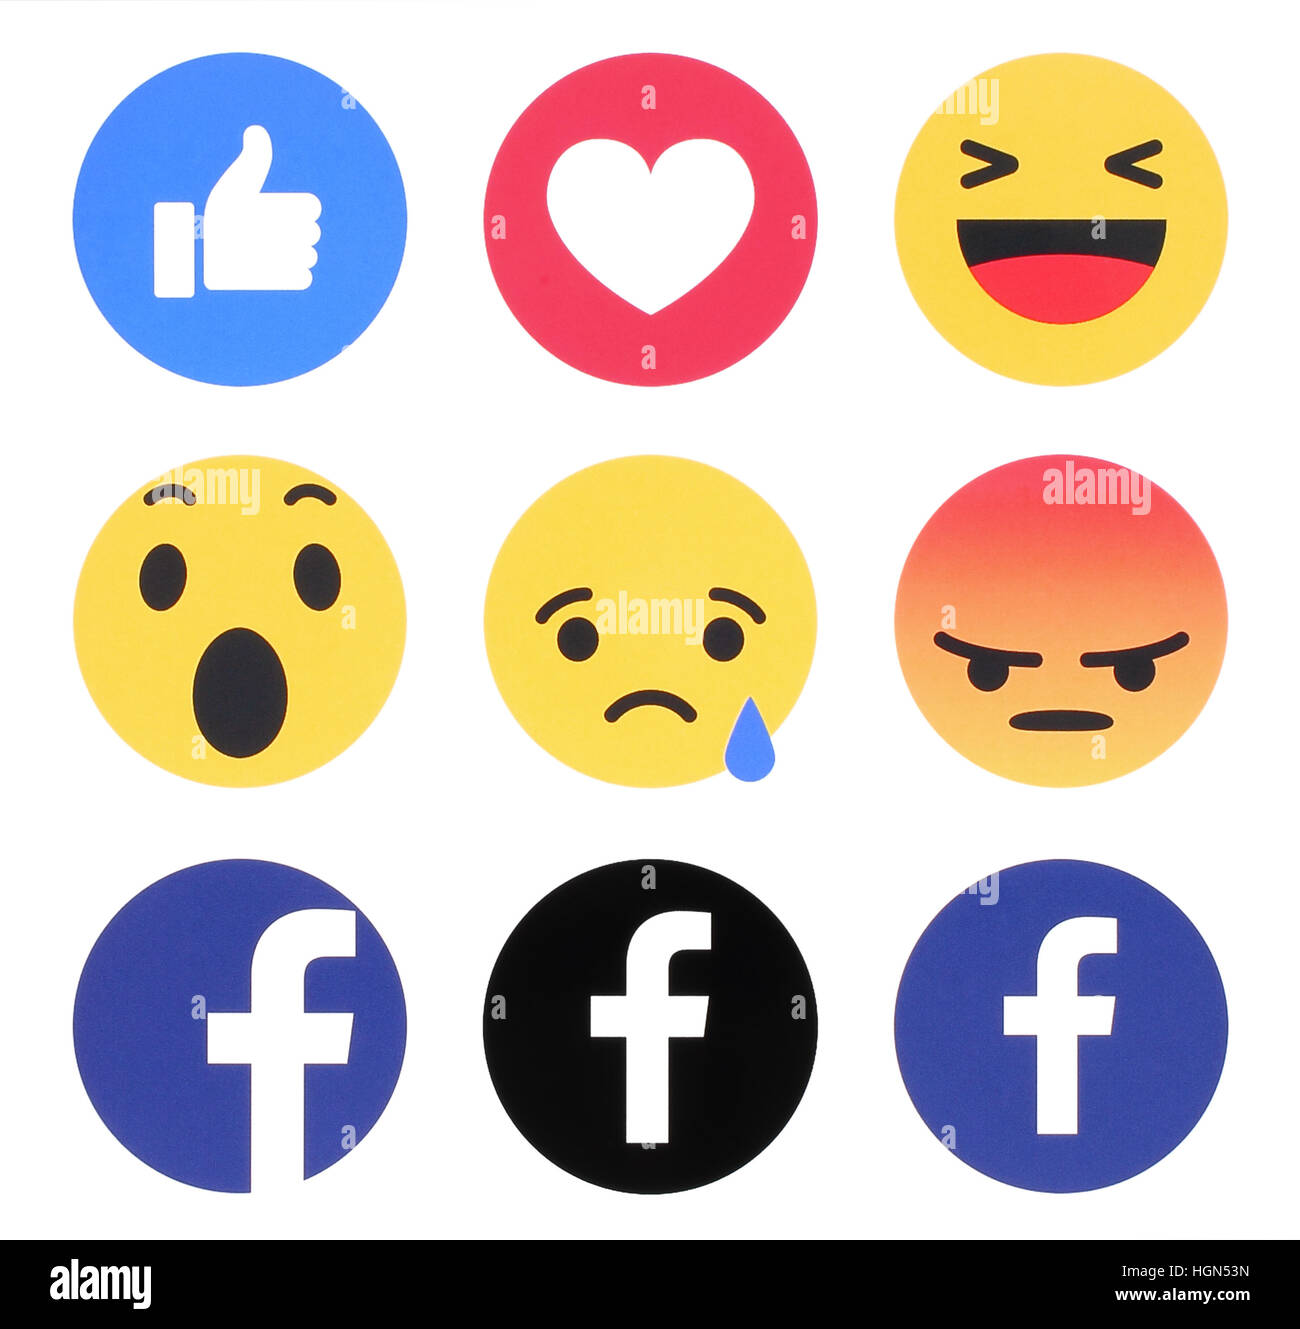 Kiev, Ucraina - 07 Novembre 2016: Nuovo Facebook Like Button 6 empatici reazioni Emoji stampato su carta bianca. Facebook è un ben noto social netwo Foto Stock